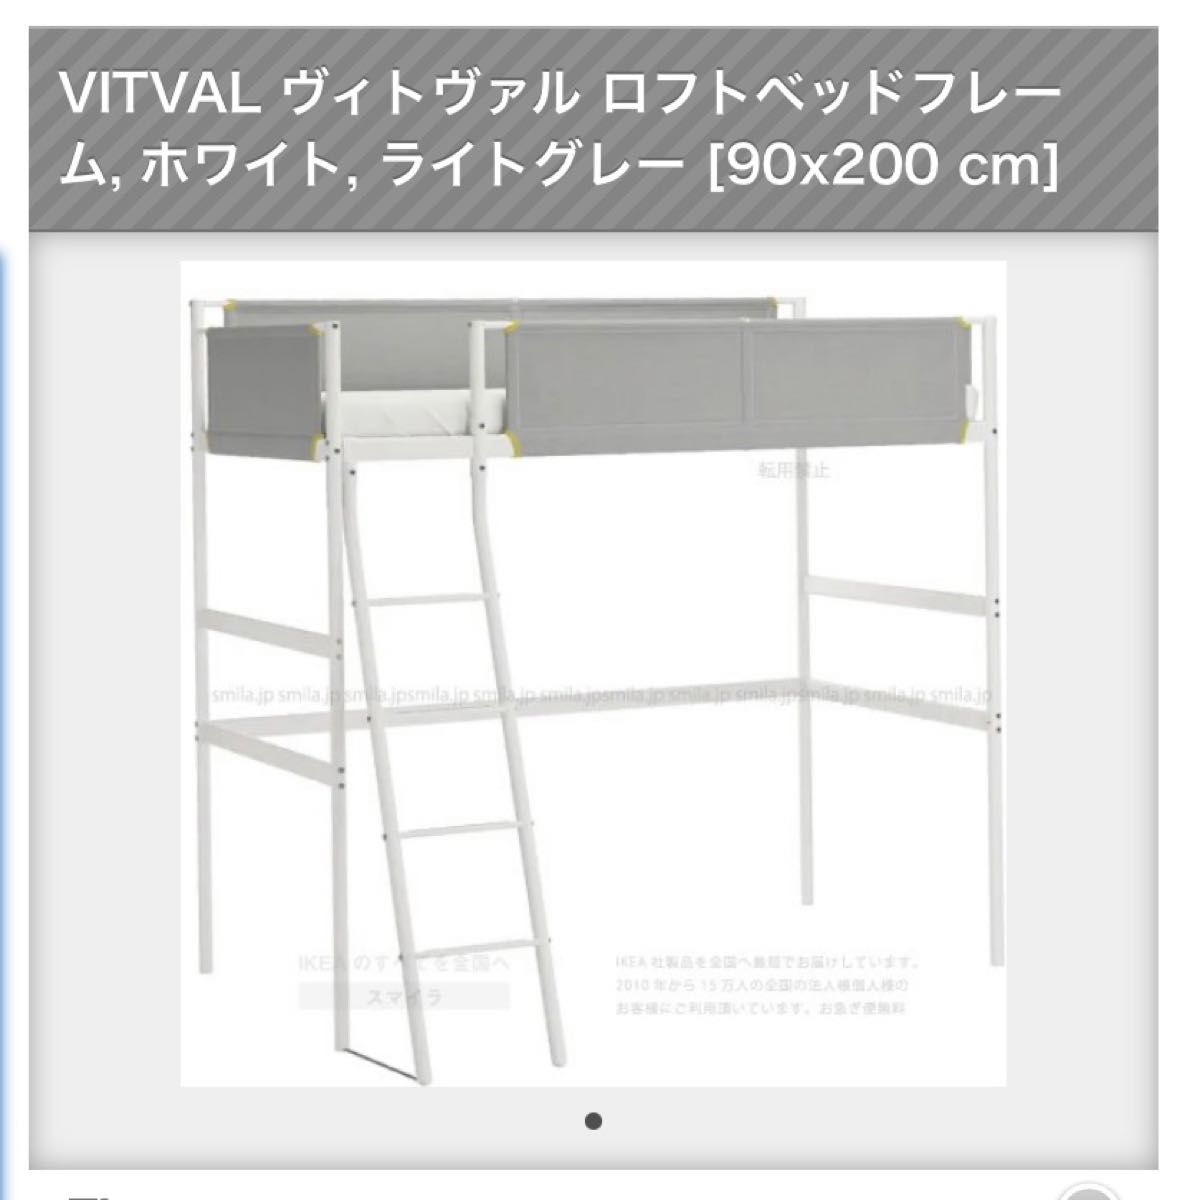 IKEA VITVAL ヴィトヴァル ロフトベッドフレーム, ホワイト, ライトグレー [90x200 cm]